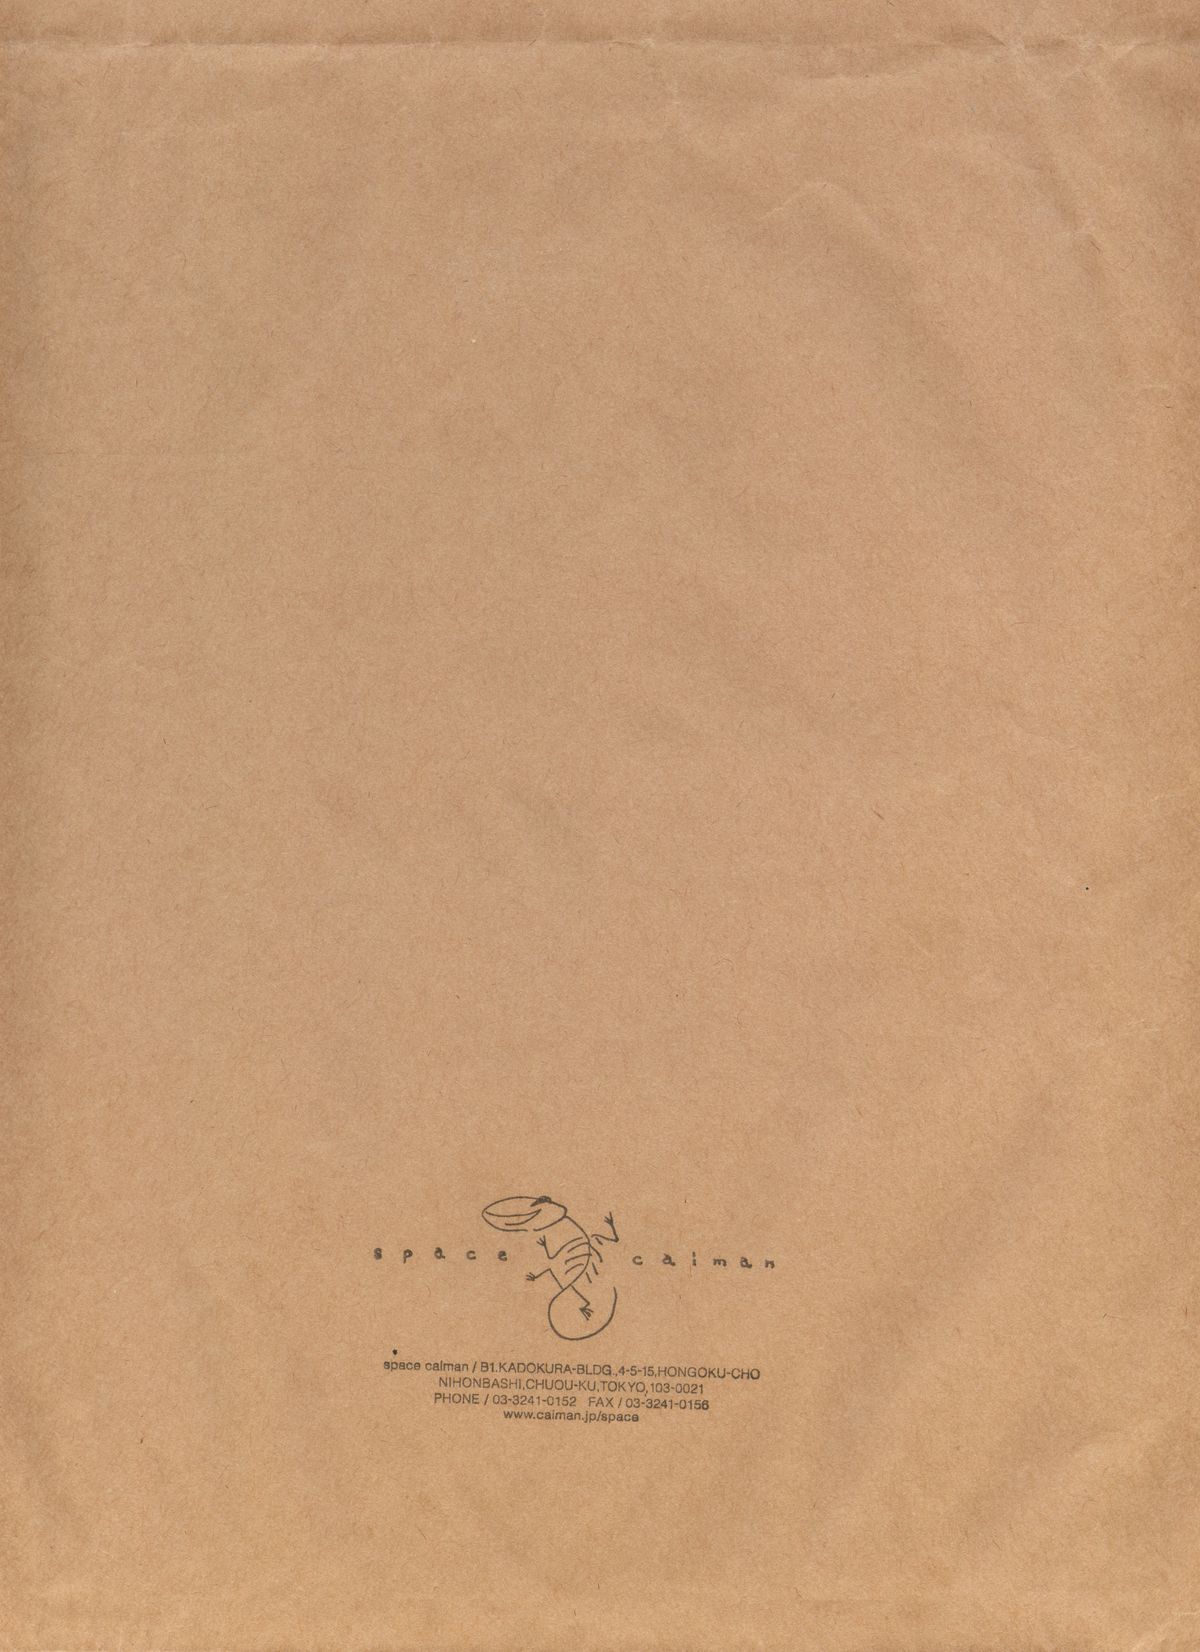 [織田non] NON VIRGIN 【Limited Edition】 CHRONICLE-FULLCOLOR BOOKLET-SIDE:MELON + NON VIRGIN LINE WORKS + Postcard